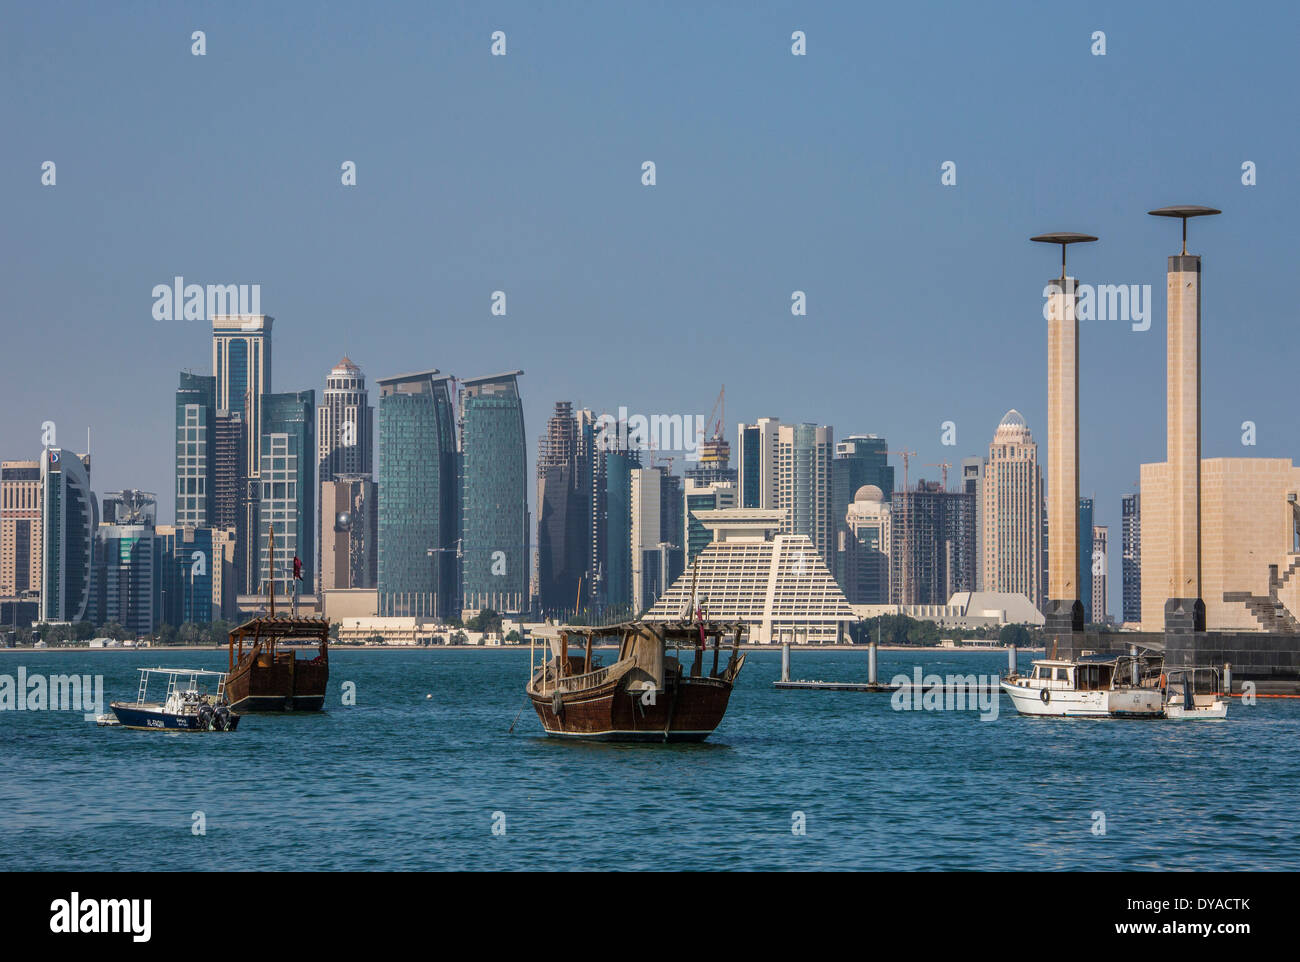 Doha in Qatar Medio Oriente architettura barche baia edifici colorati della città futuristica harbour marina skyline tourist Foto Stock